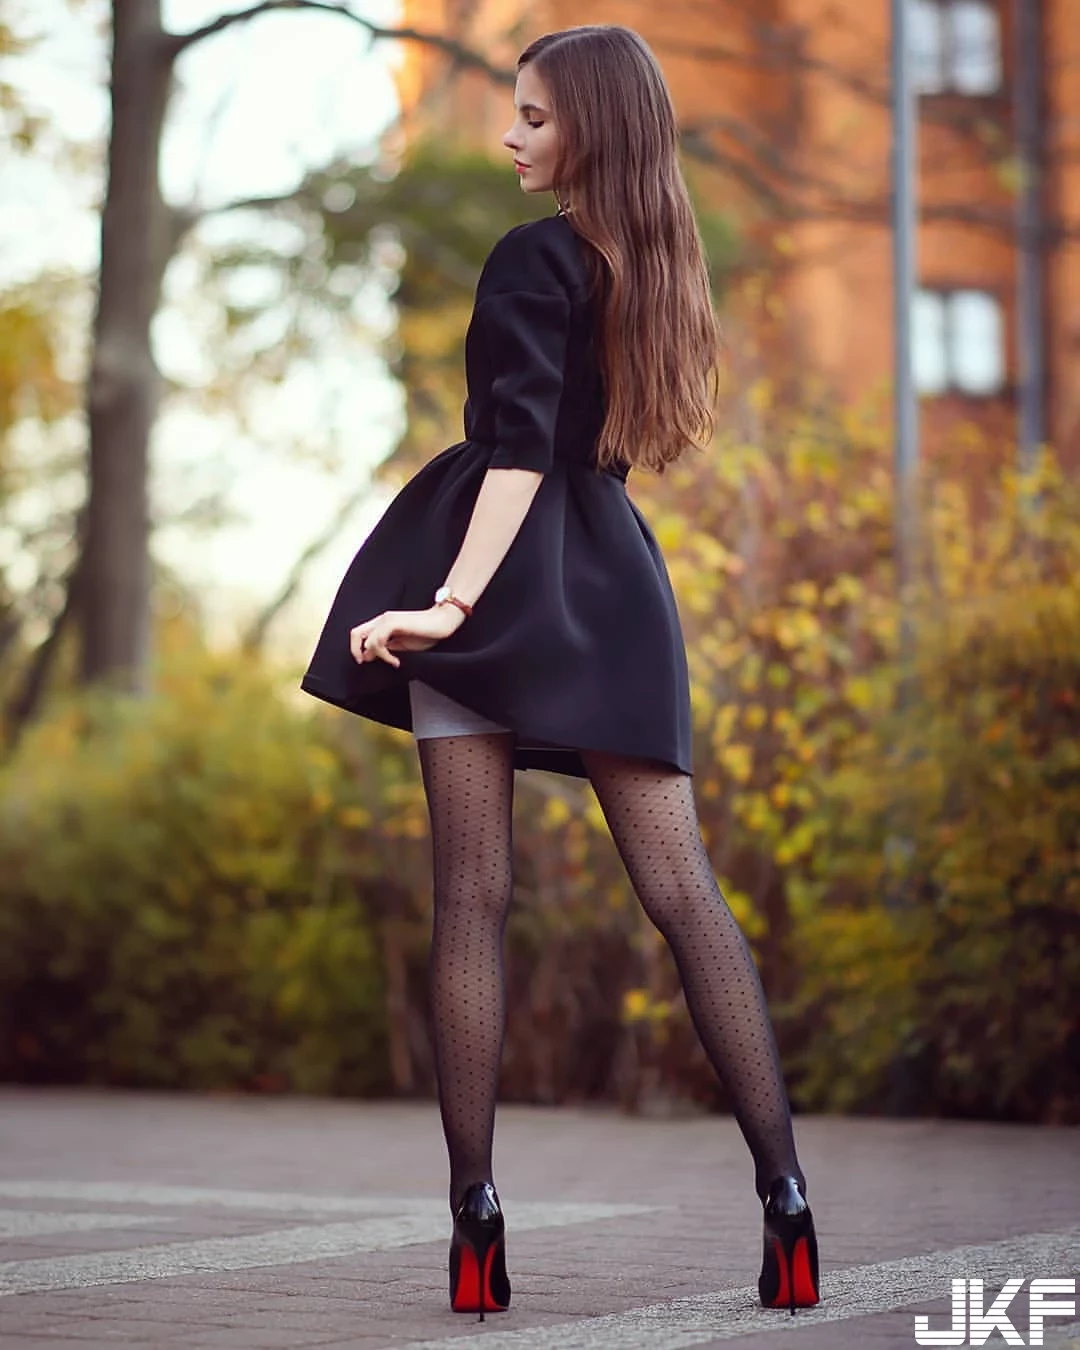 烏克蘭 Ariadna Majewska 神腿黑絲妹玩露出 一嗨巨乳晃出-5